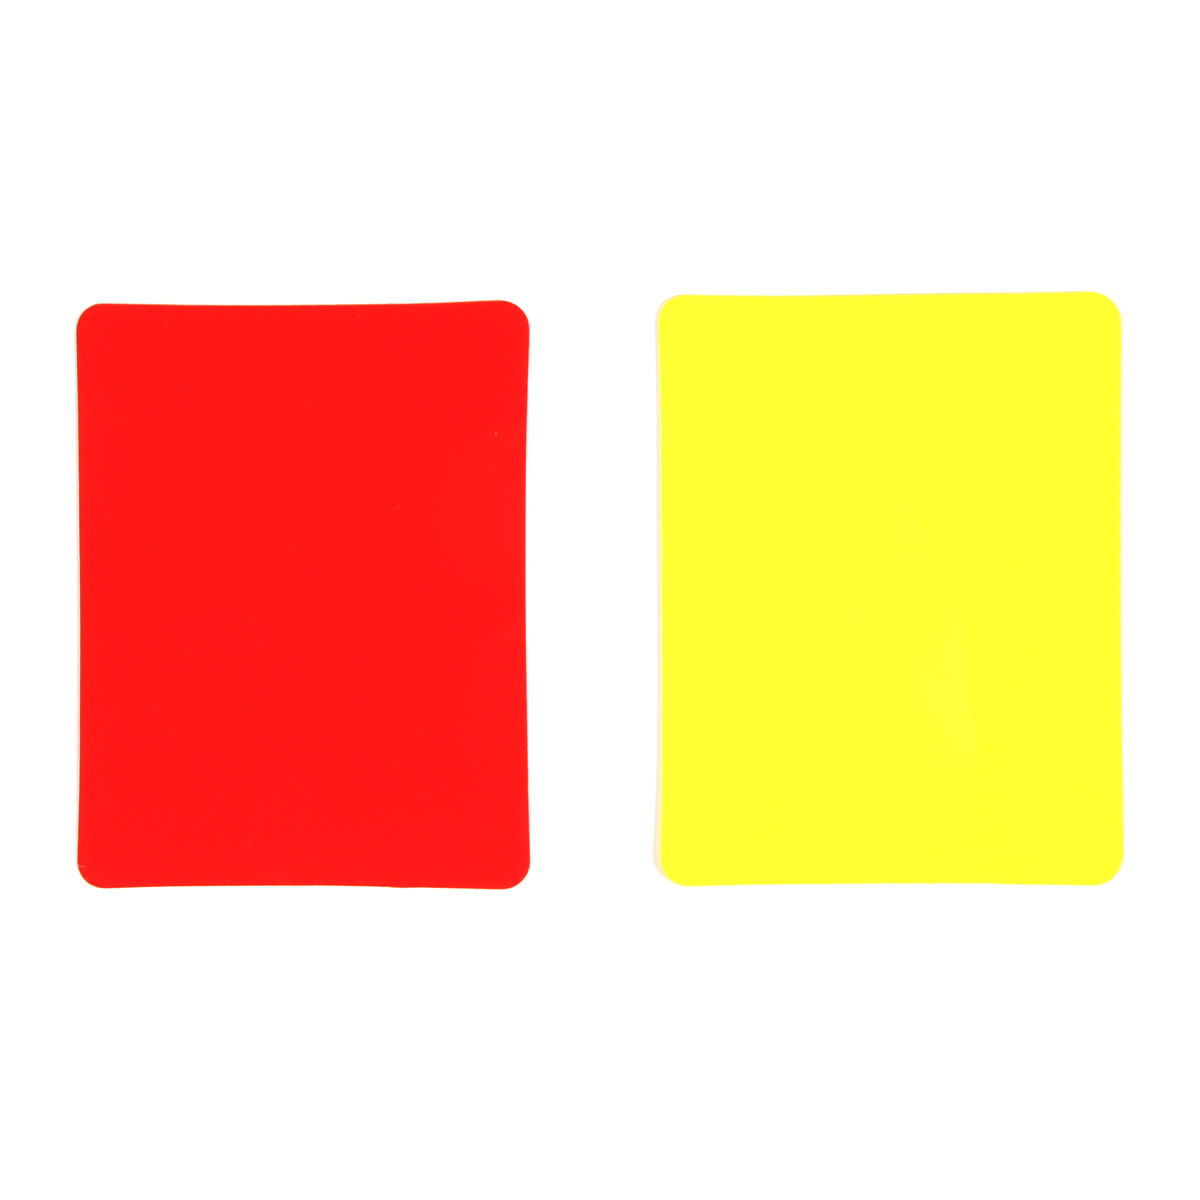 Tarjetas De Árbitro De Pvc (juego De 2, 1 Roja Y 1 Amarilla)  MKP